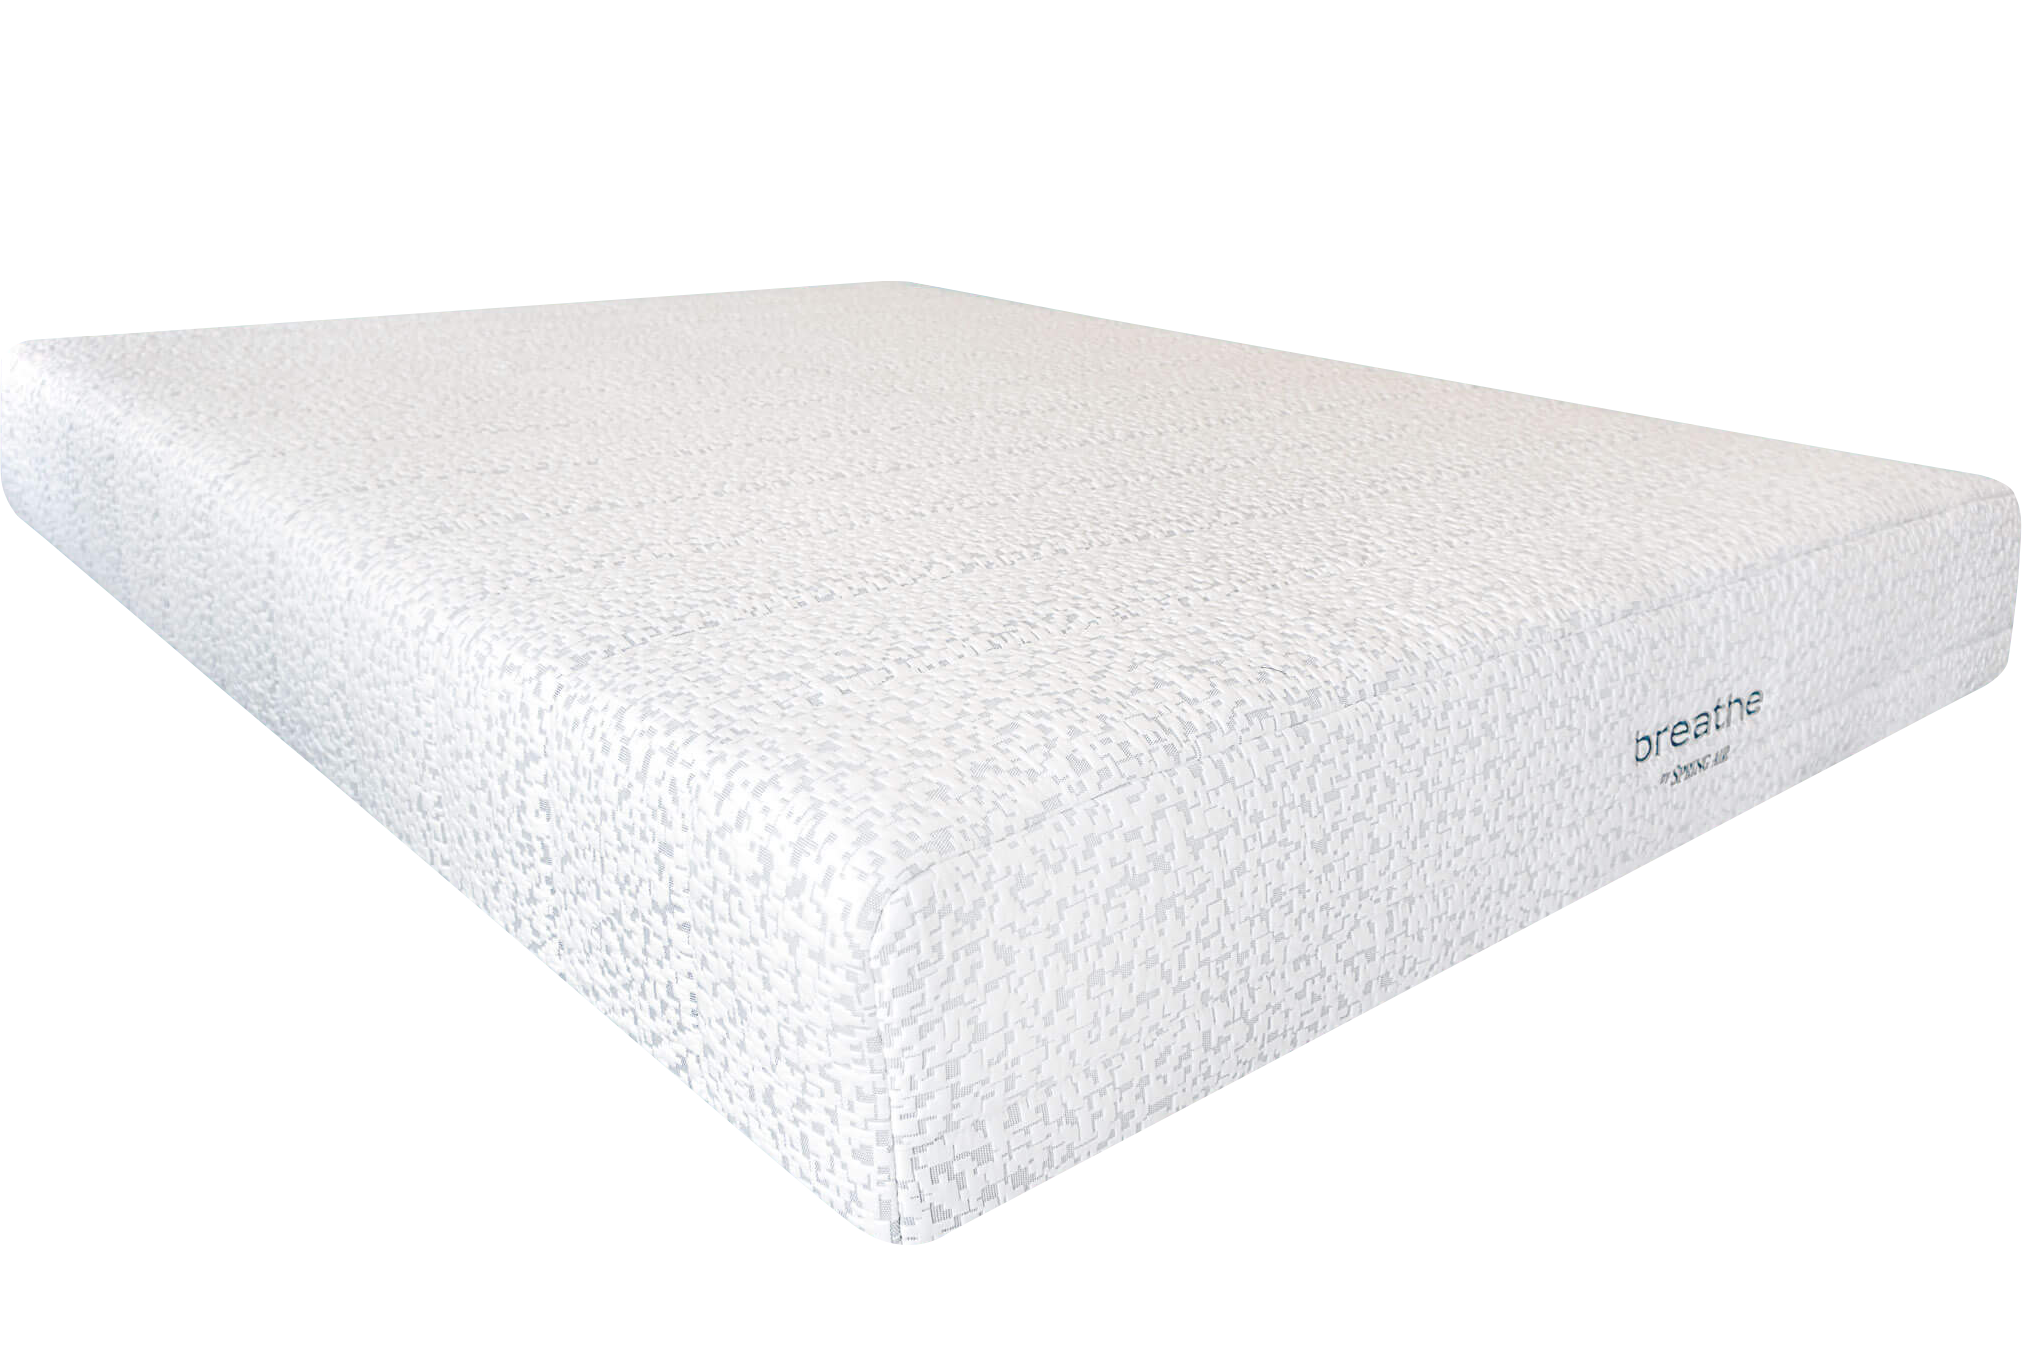 memory foam mattress that lasts longest